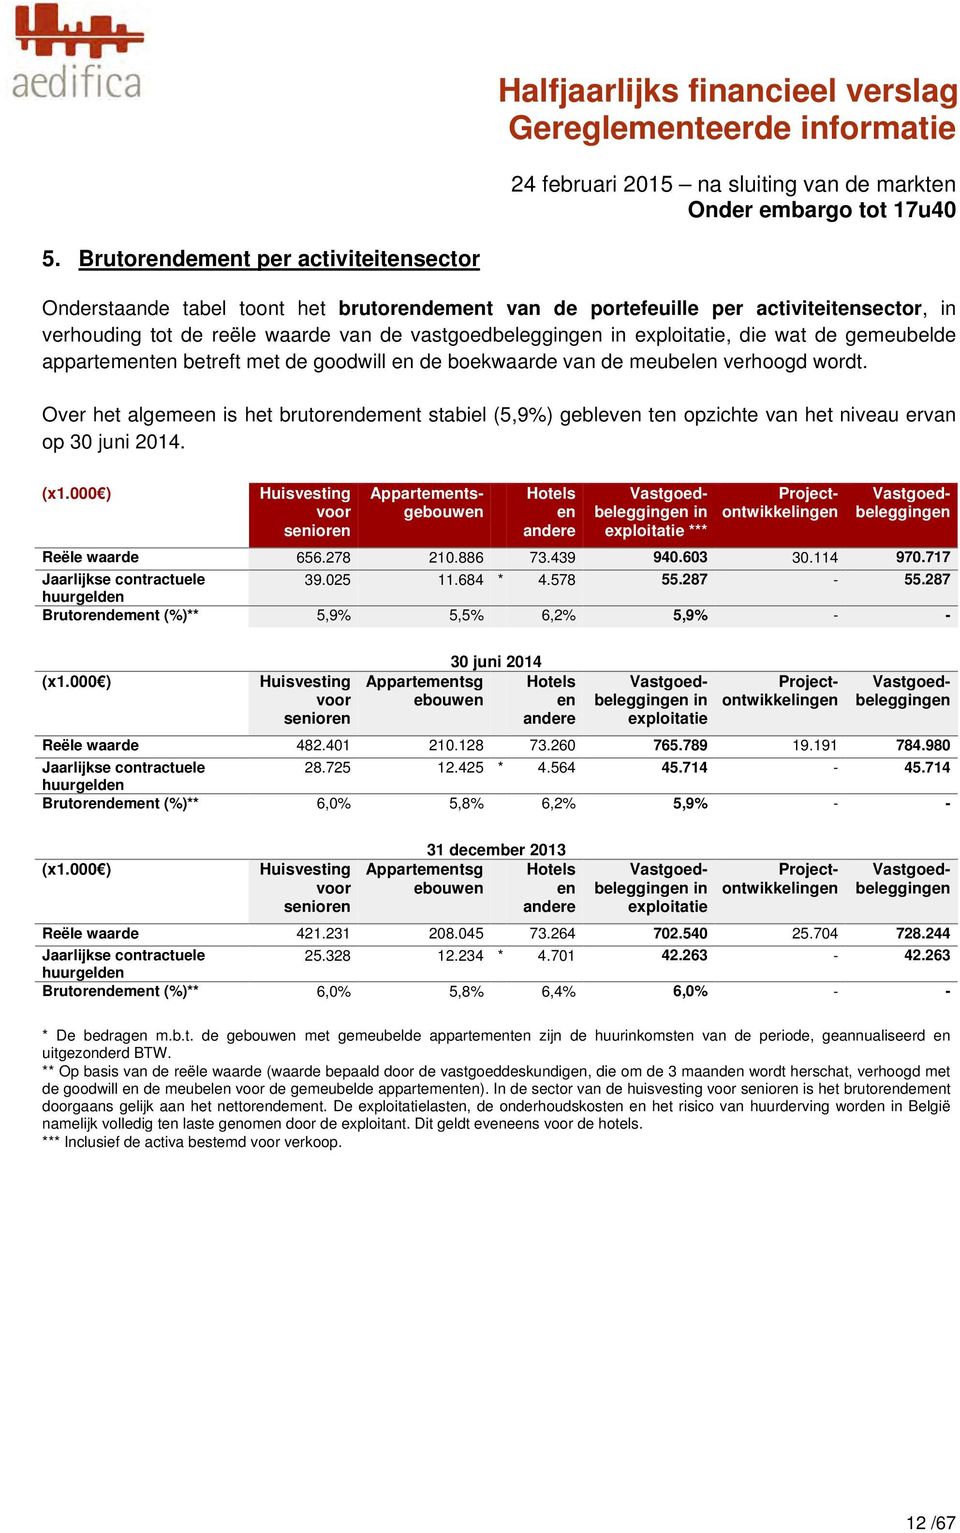 Over het algemeen is het brutorendement stabiel (5,9%) gebleven ten opzichte van het niveau ervan op 30 juni 2014. (x1.